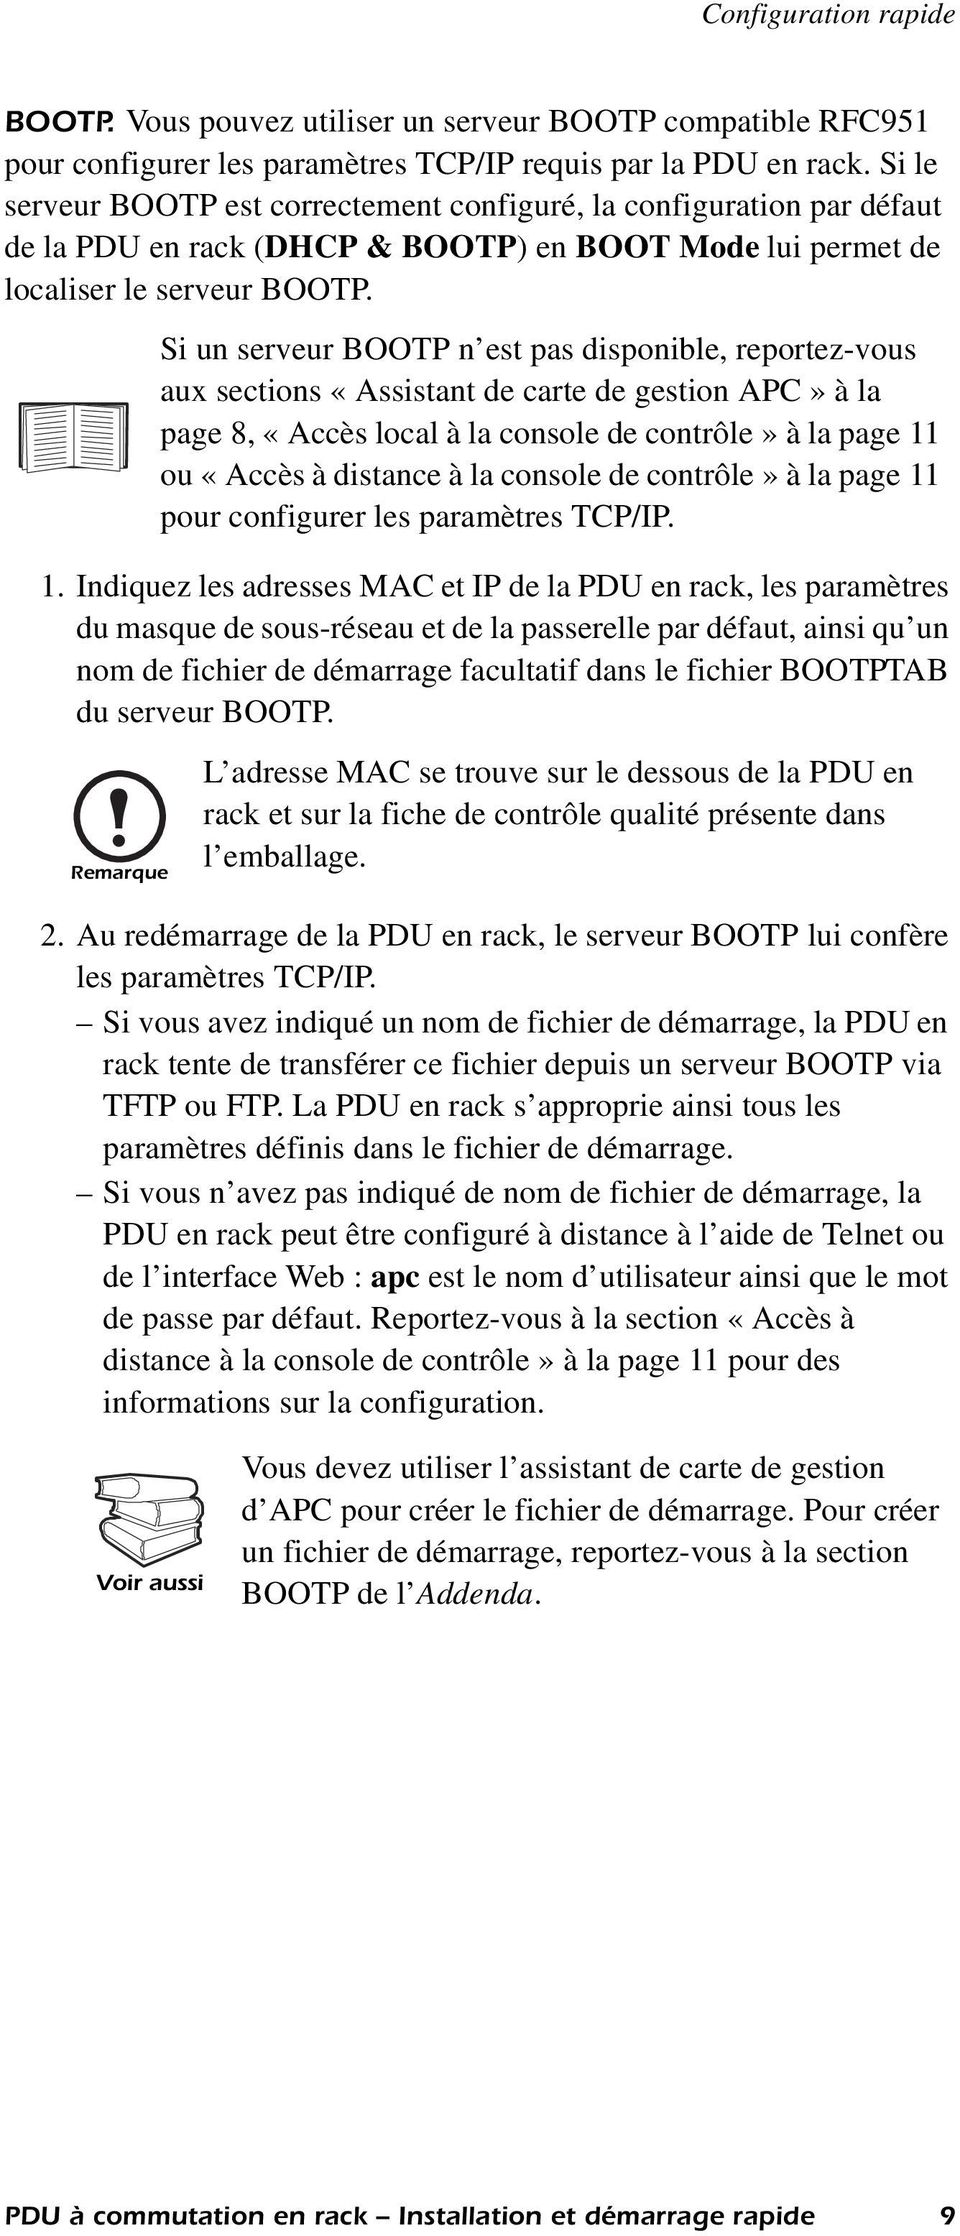 Si un serveur BOOTP n est pas disponible, reportez-vous aux sections «Assistant de carte de gestion APC» à la page 8, «Accès local à la console de contrôle» à la page 11 ou «Accès à distance à la